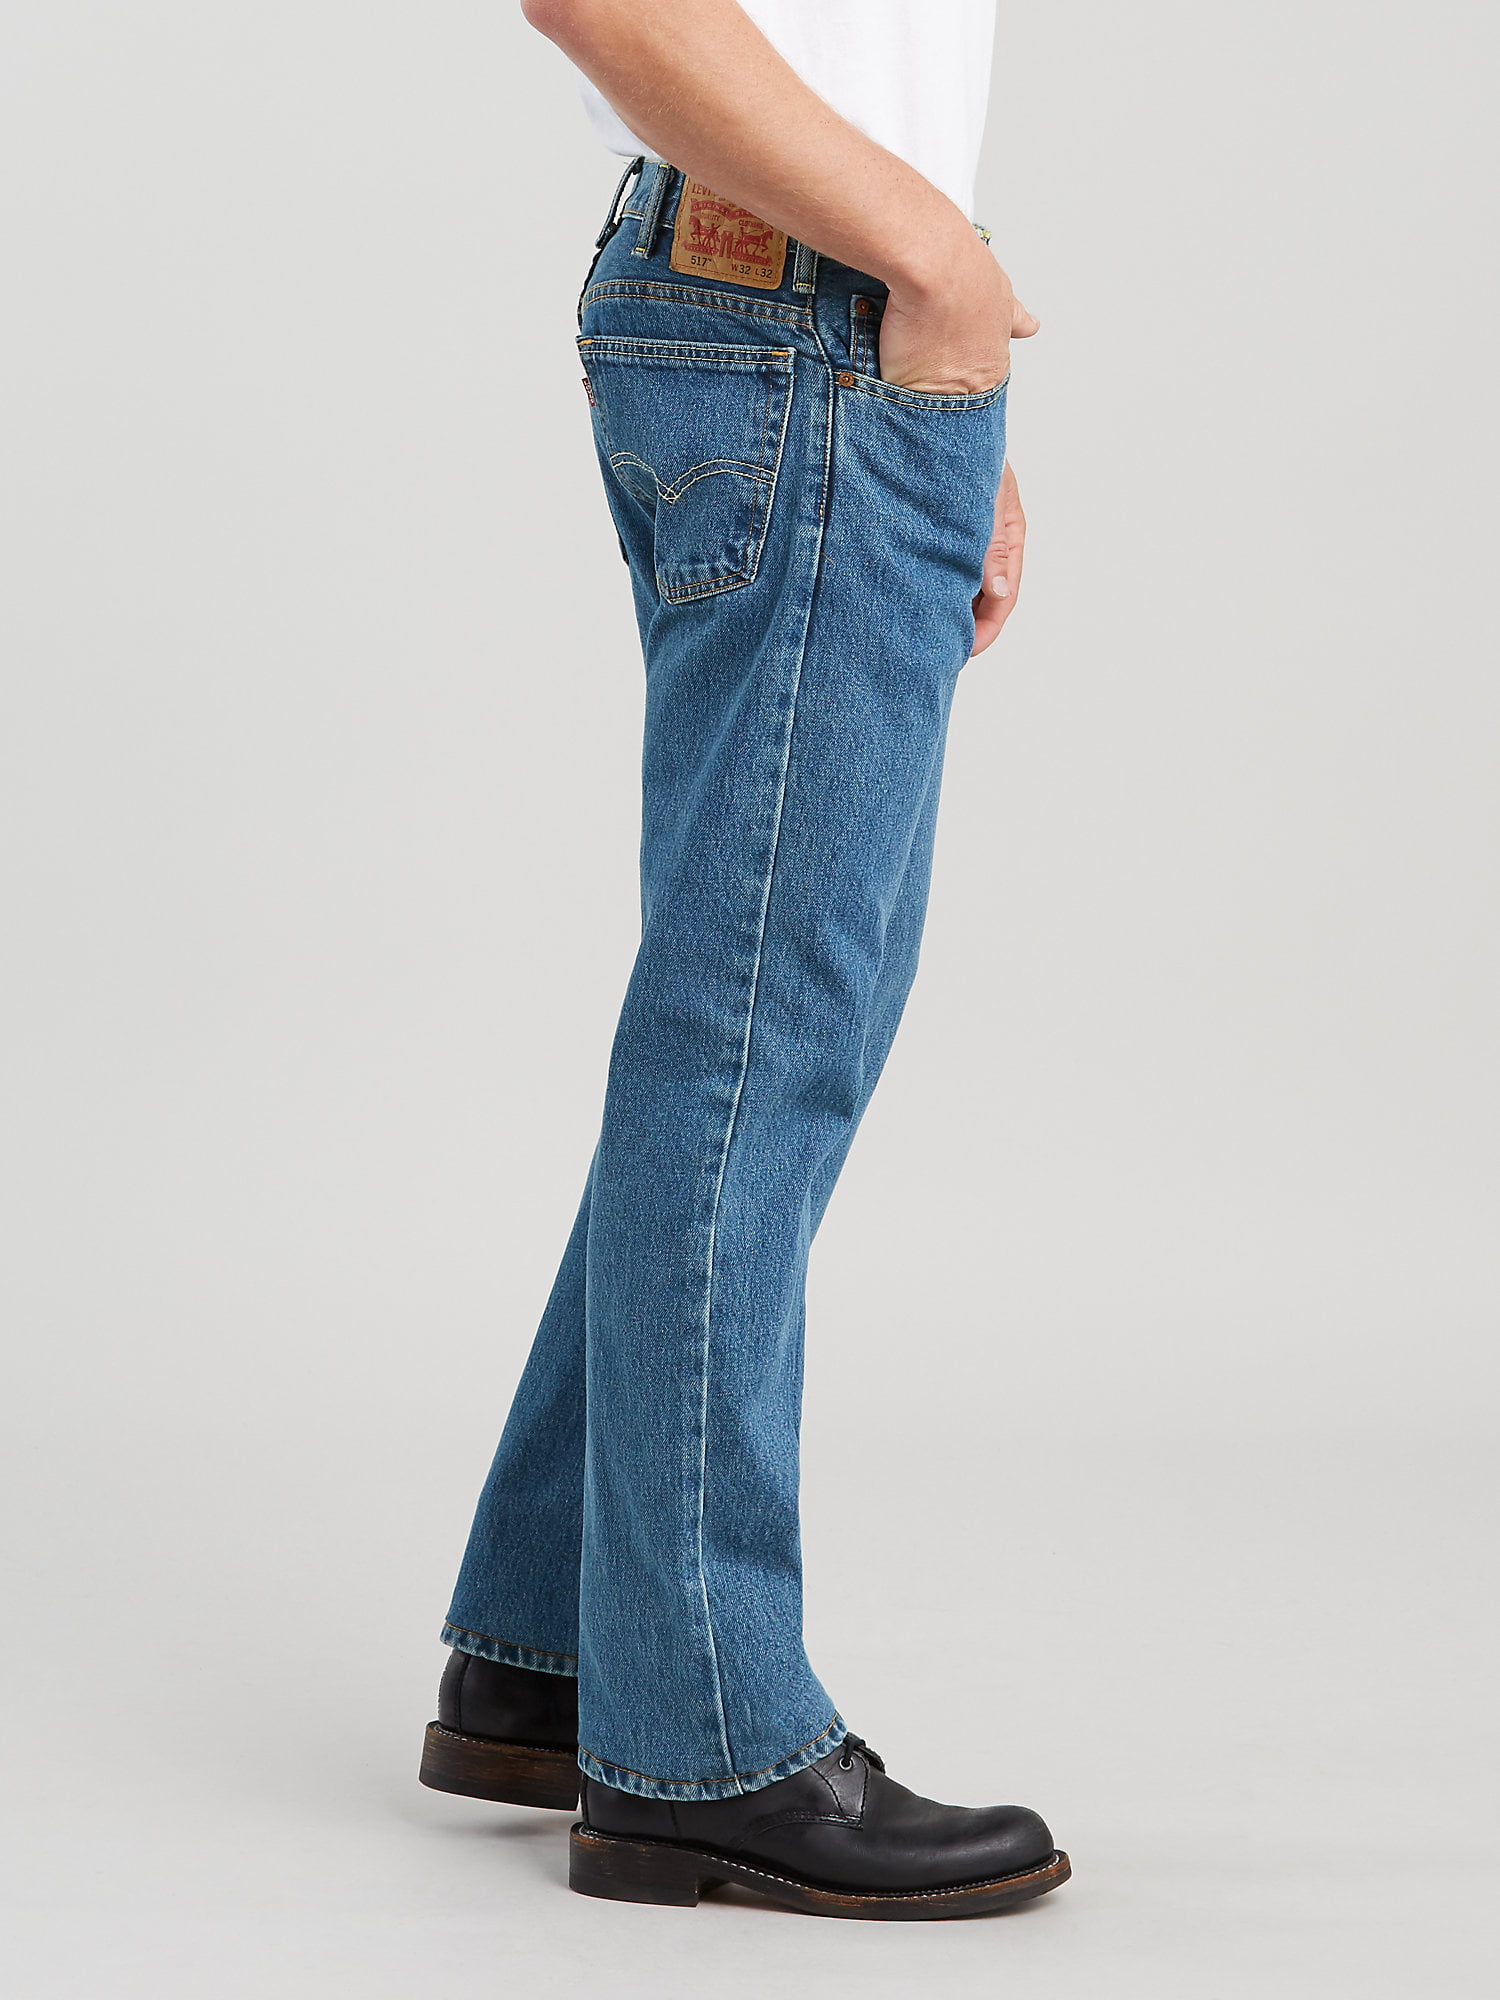 Levi's Men's 517 Bootcut Fit Jeans